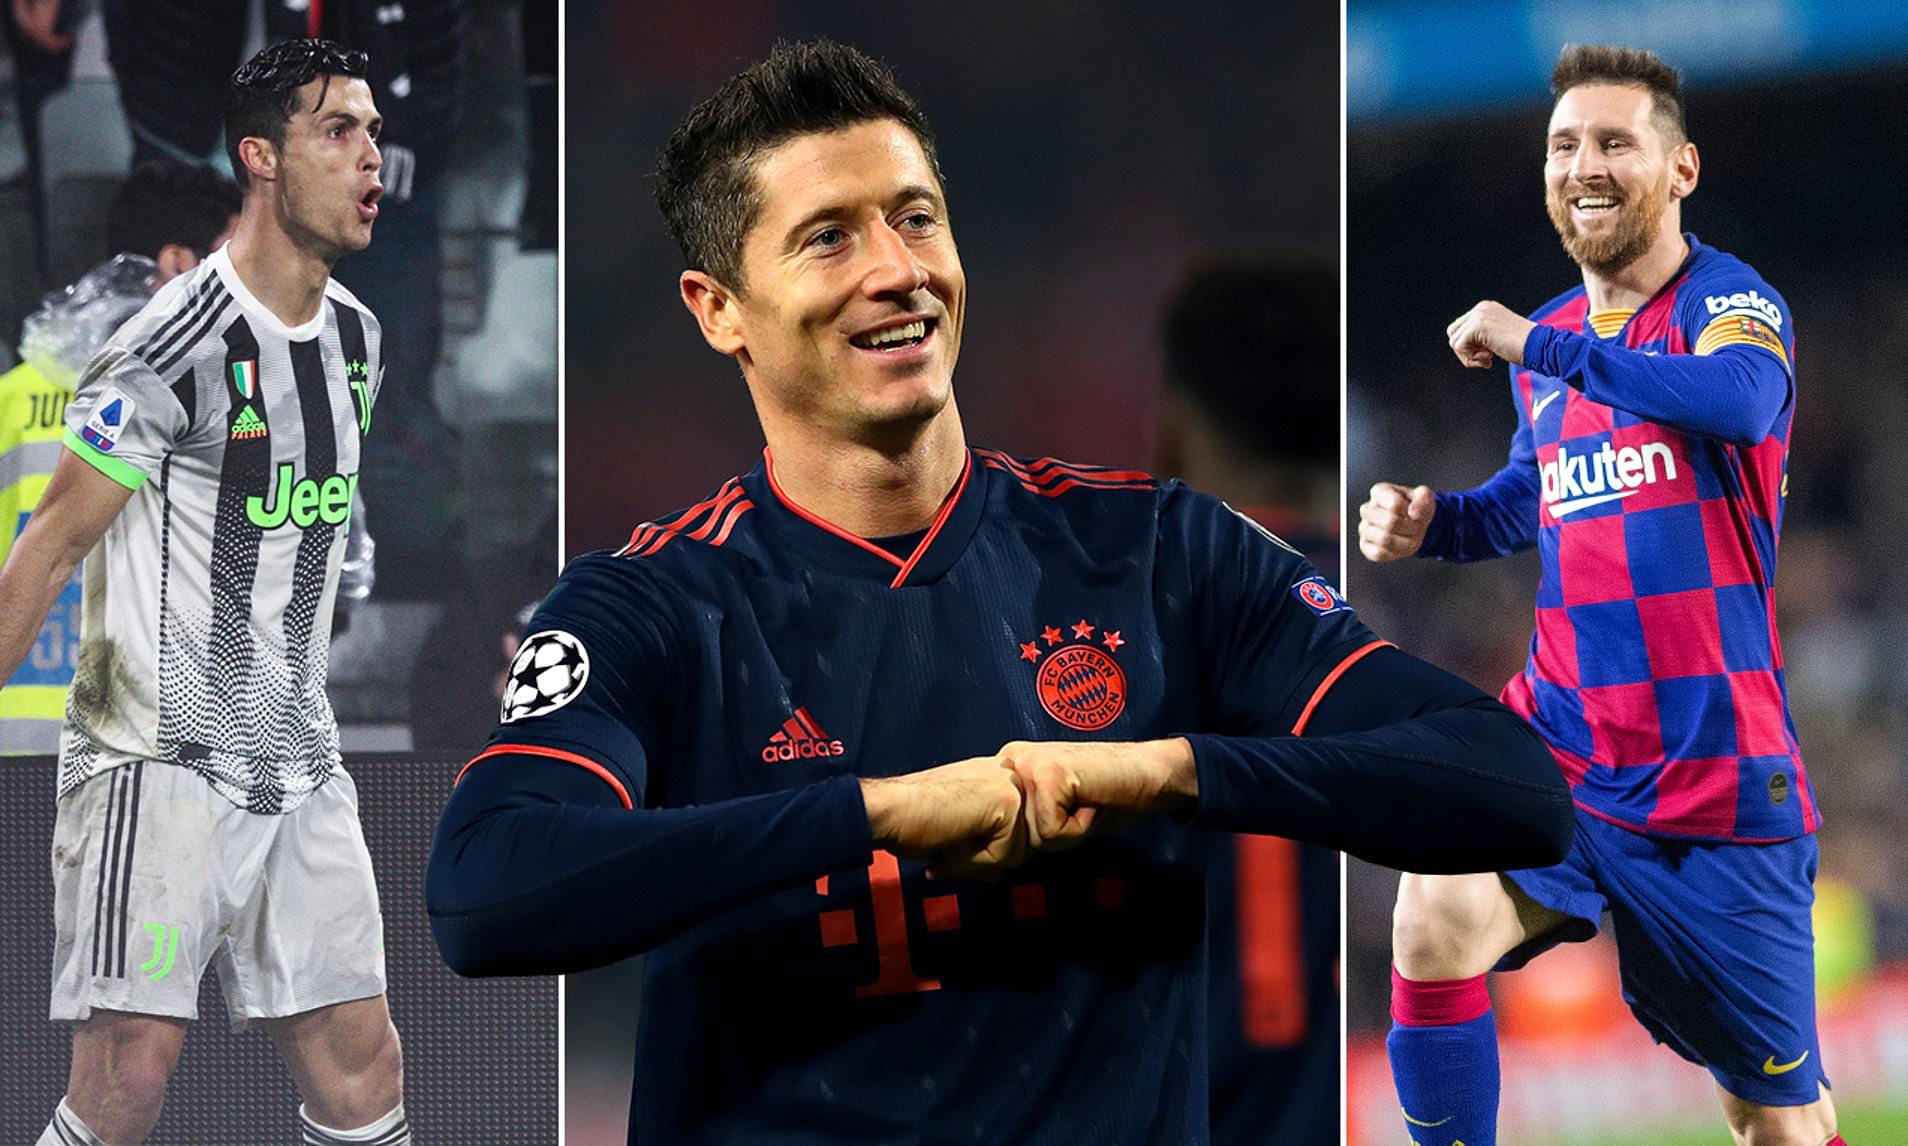 Jouer avec Messi ou Cristiano ? Le choix de Lewandowski révélé par son ex-agent